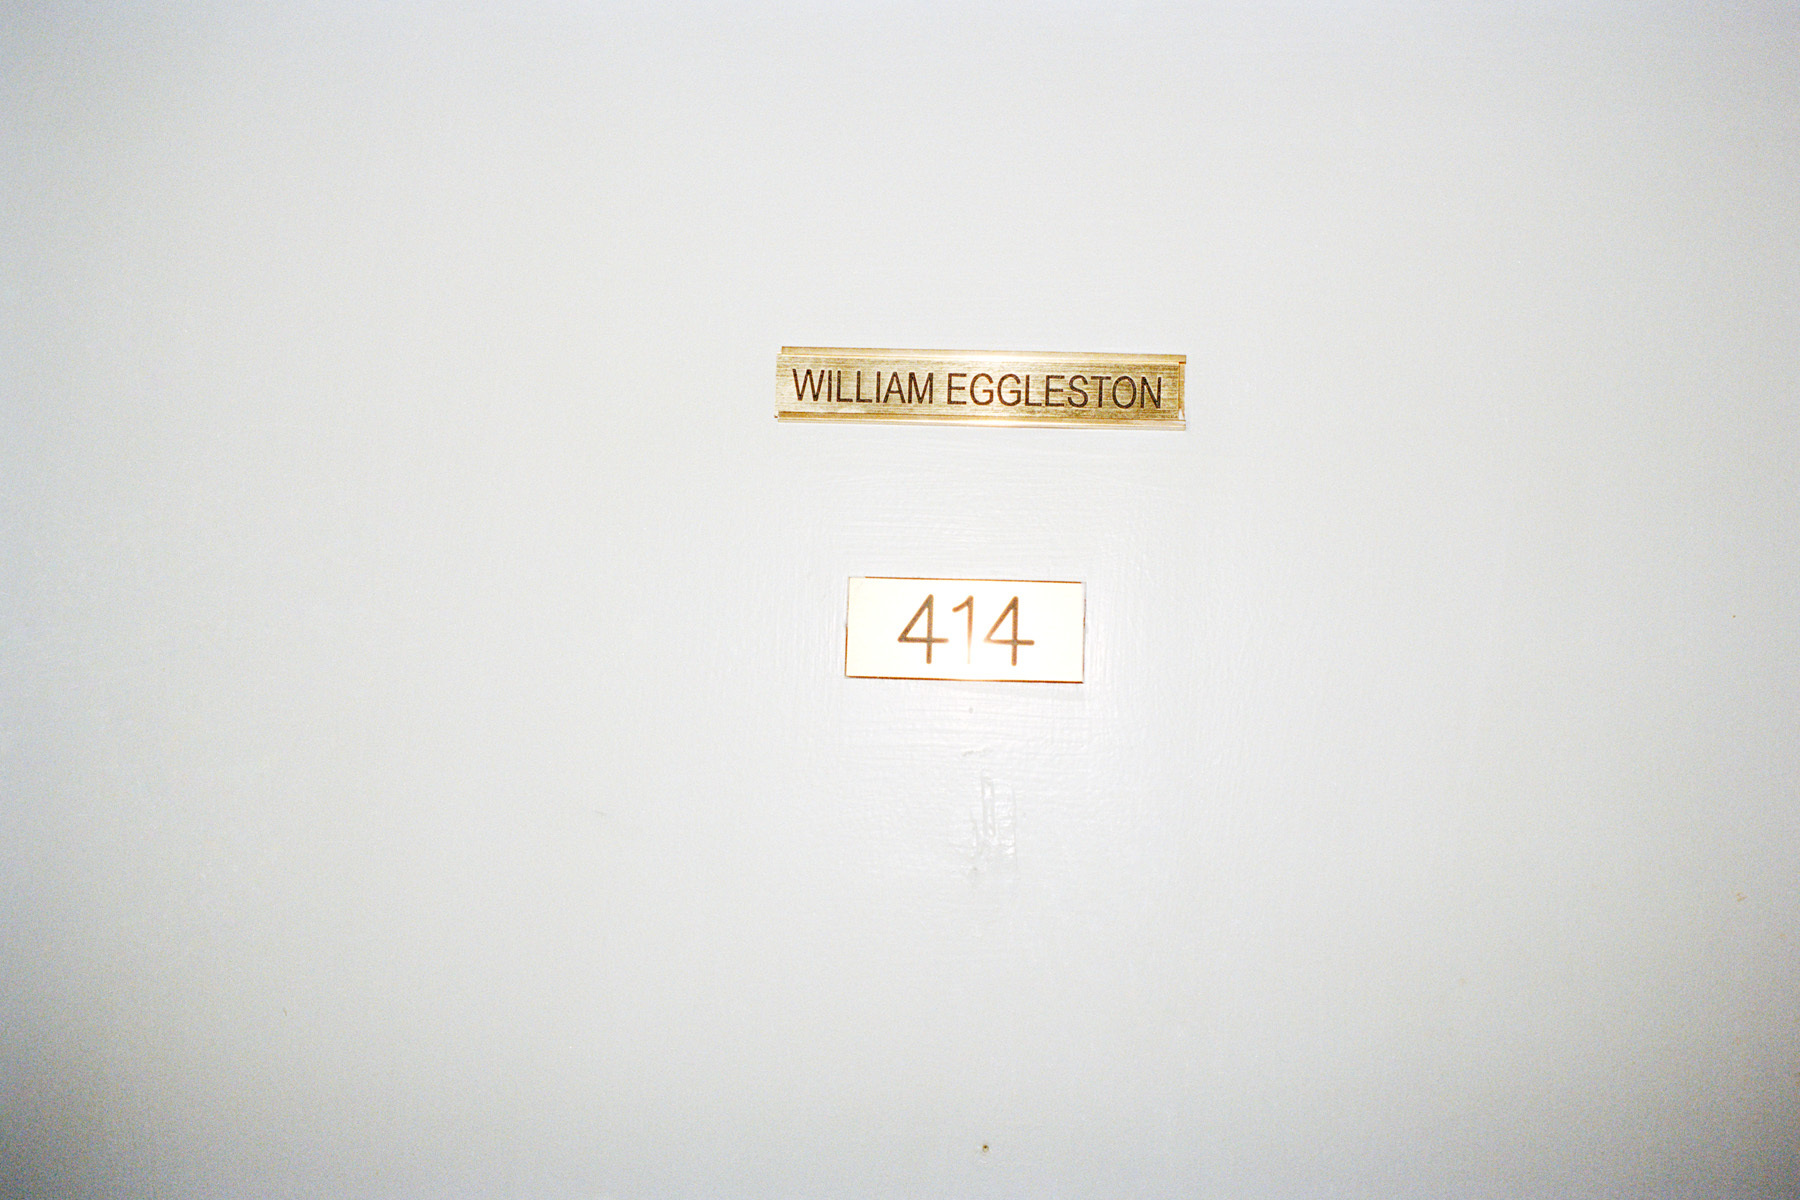 JUERGEN TELLER, William Eggleston 414, No.105, Memphis, 2010, Courtesy Christine König Galerie, Vienna and the artist